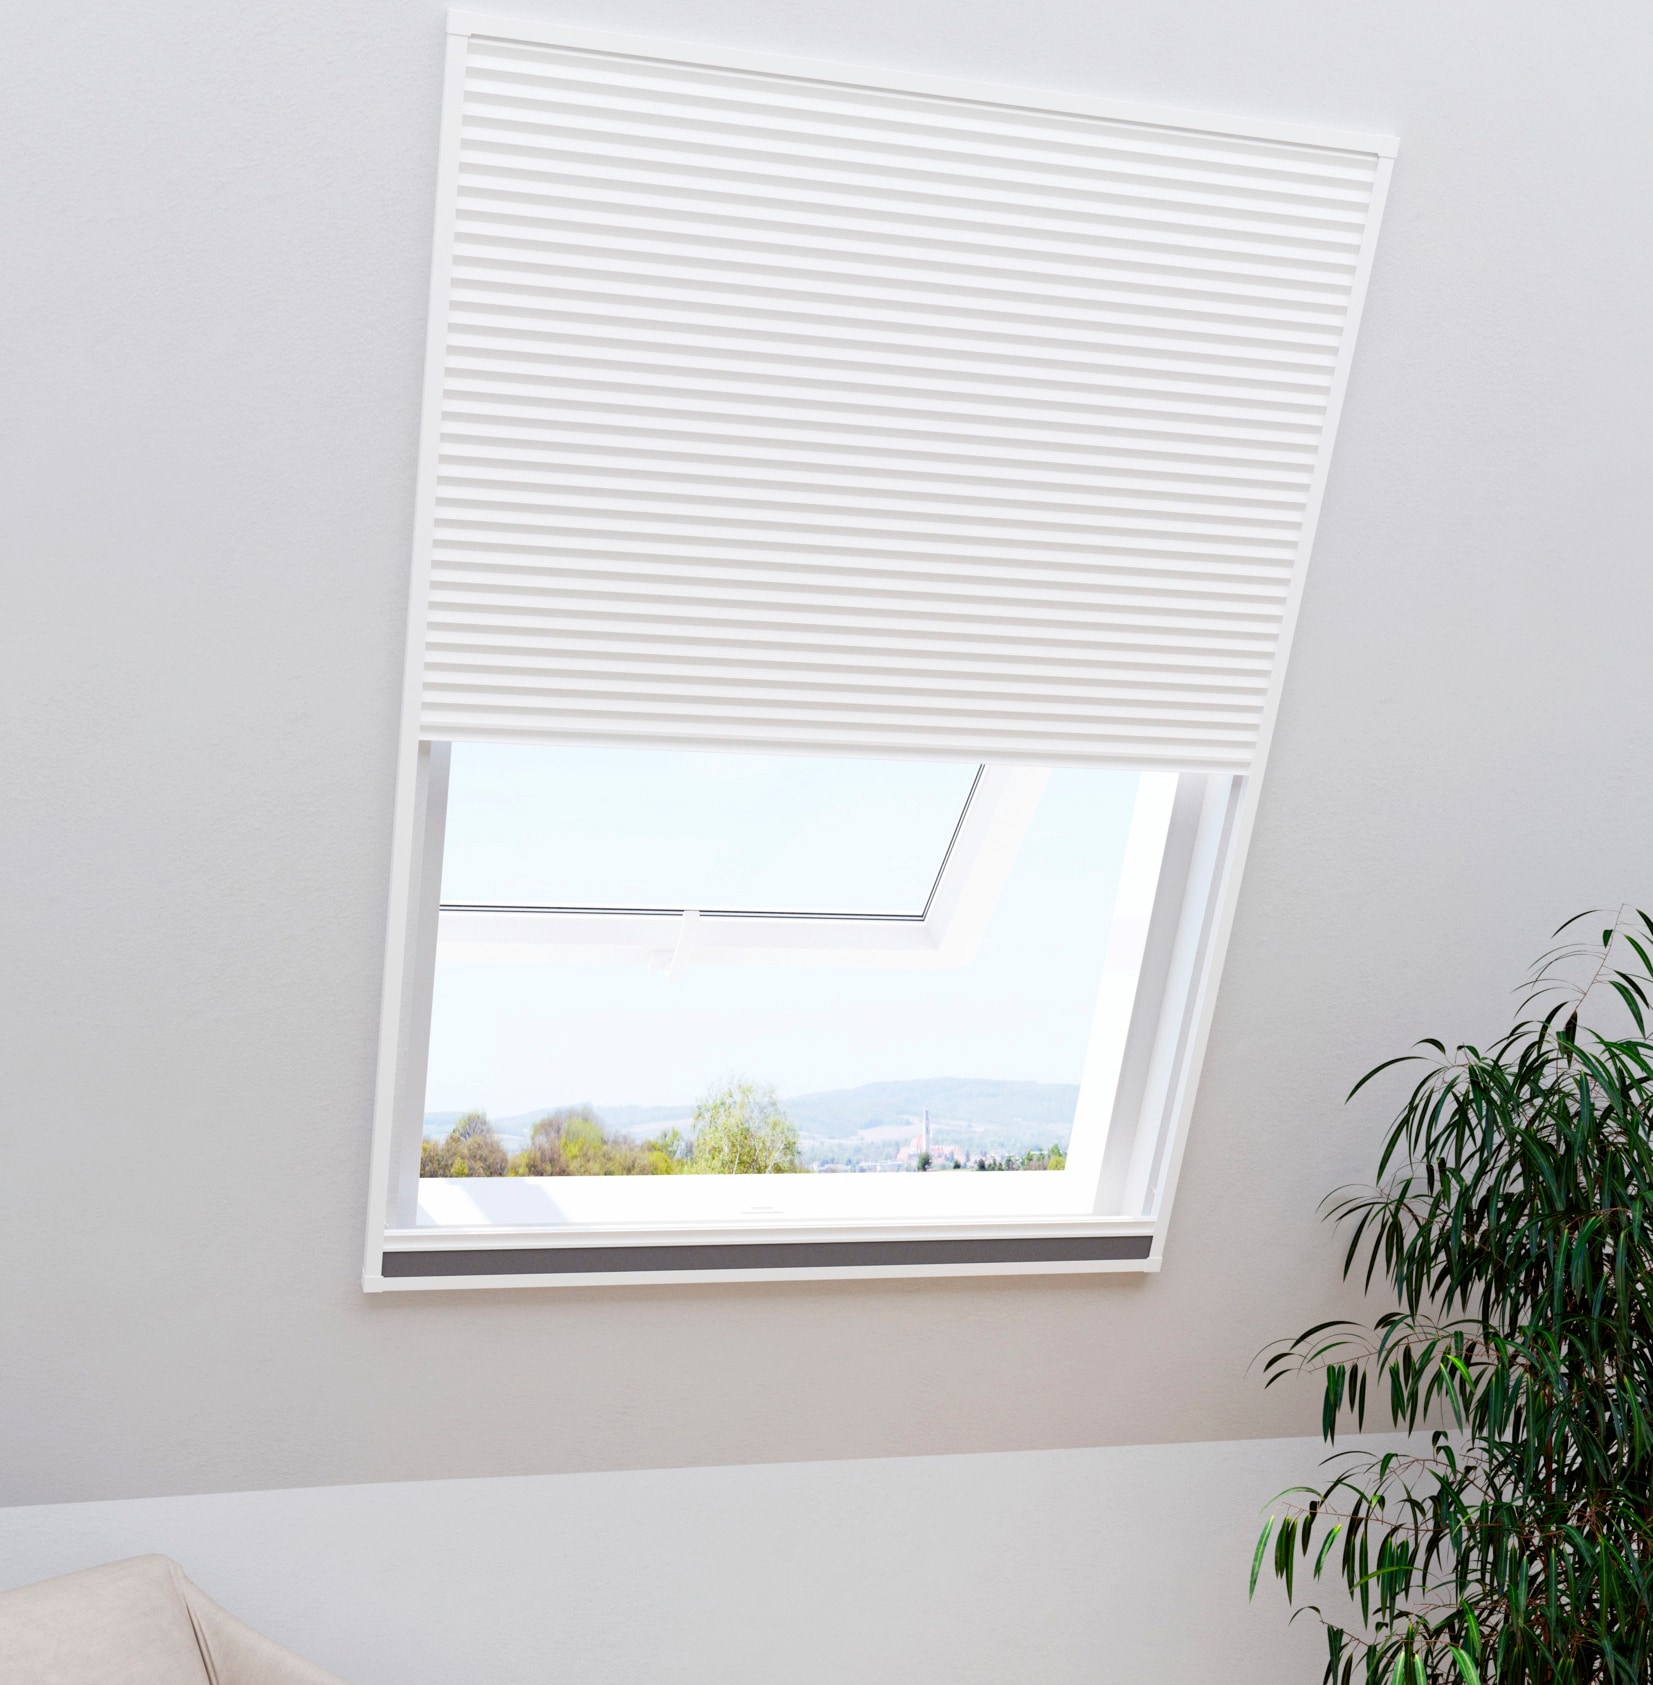 Windhager Insektenschutzrollo "für Dachfenster, 2in1 EXPERT", transparent, mit Plissee, BxH: 110x160 cm